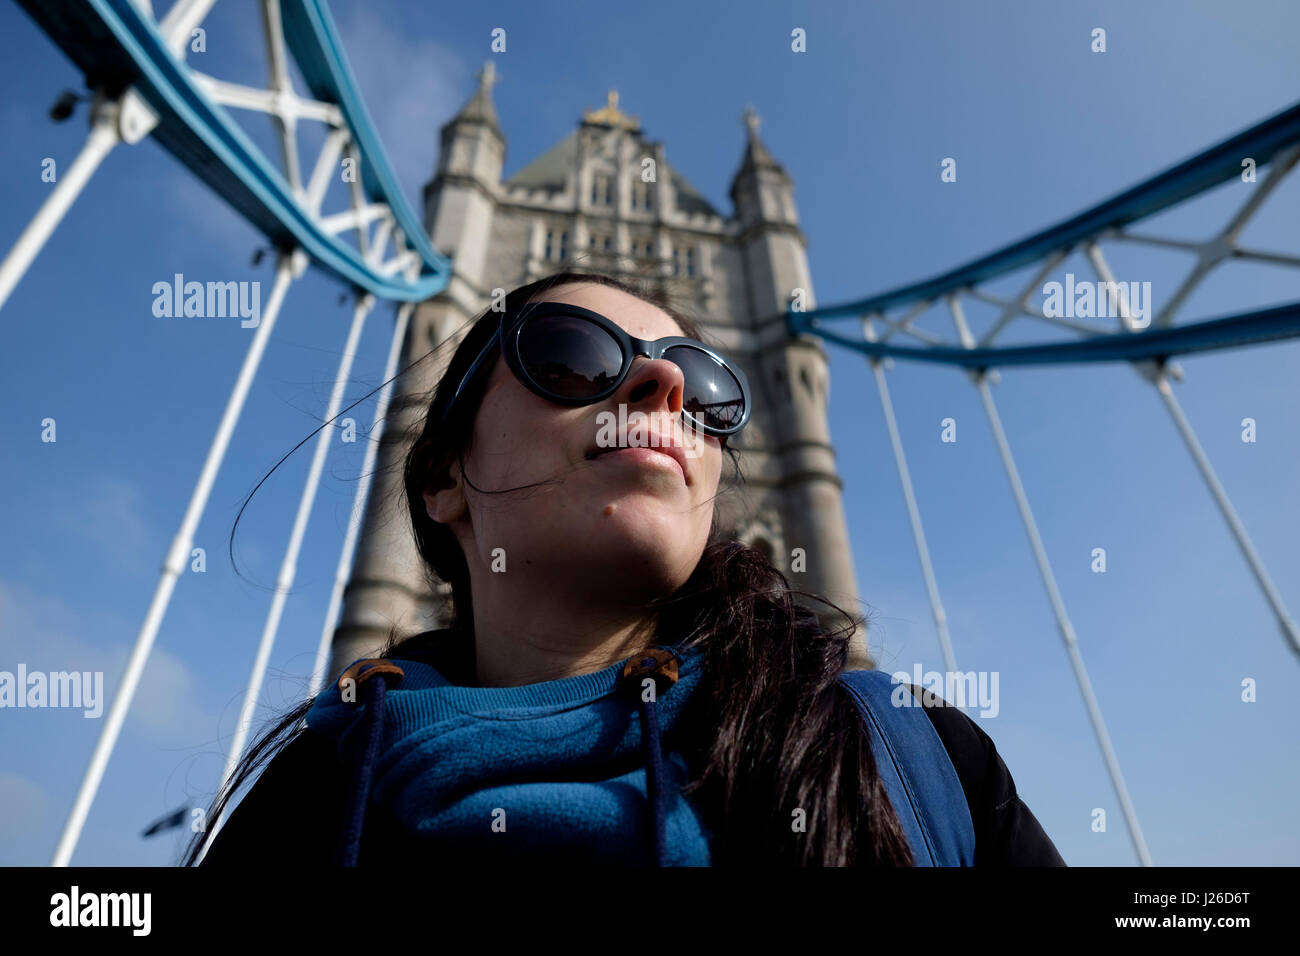 Portrait d'une jeune femme portant des lunettes de soleil sur une journée ensoleillée, le Tower Bridge, Londres, Angleterre, Royaume-Uni, Europe Banque D'Images